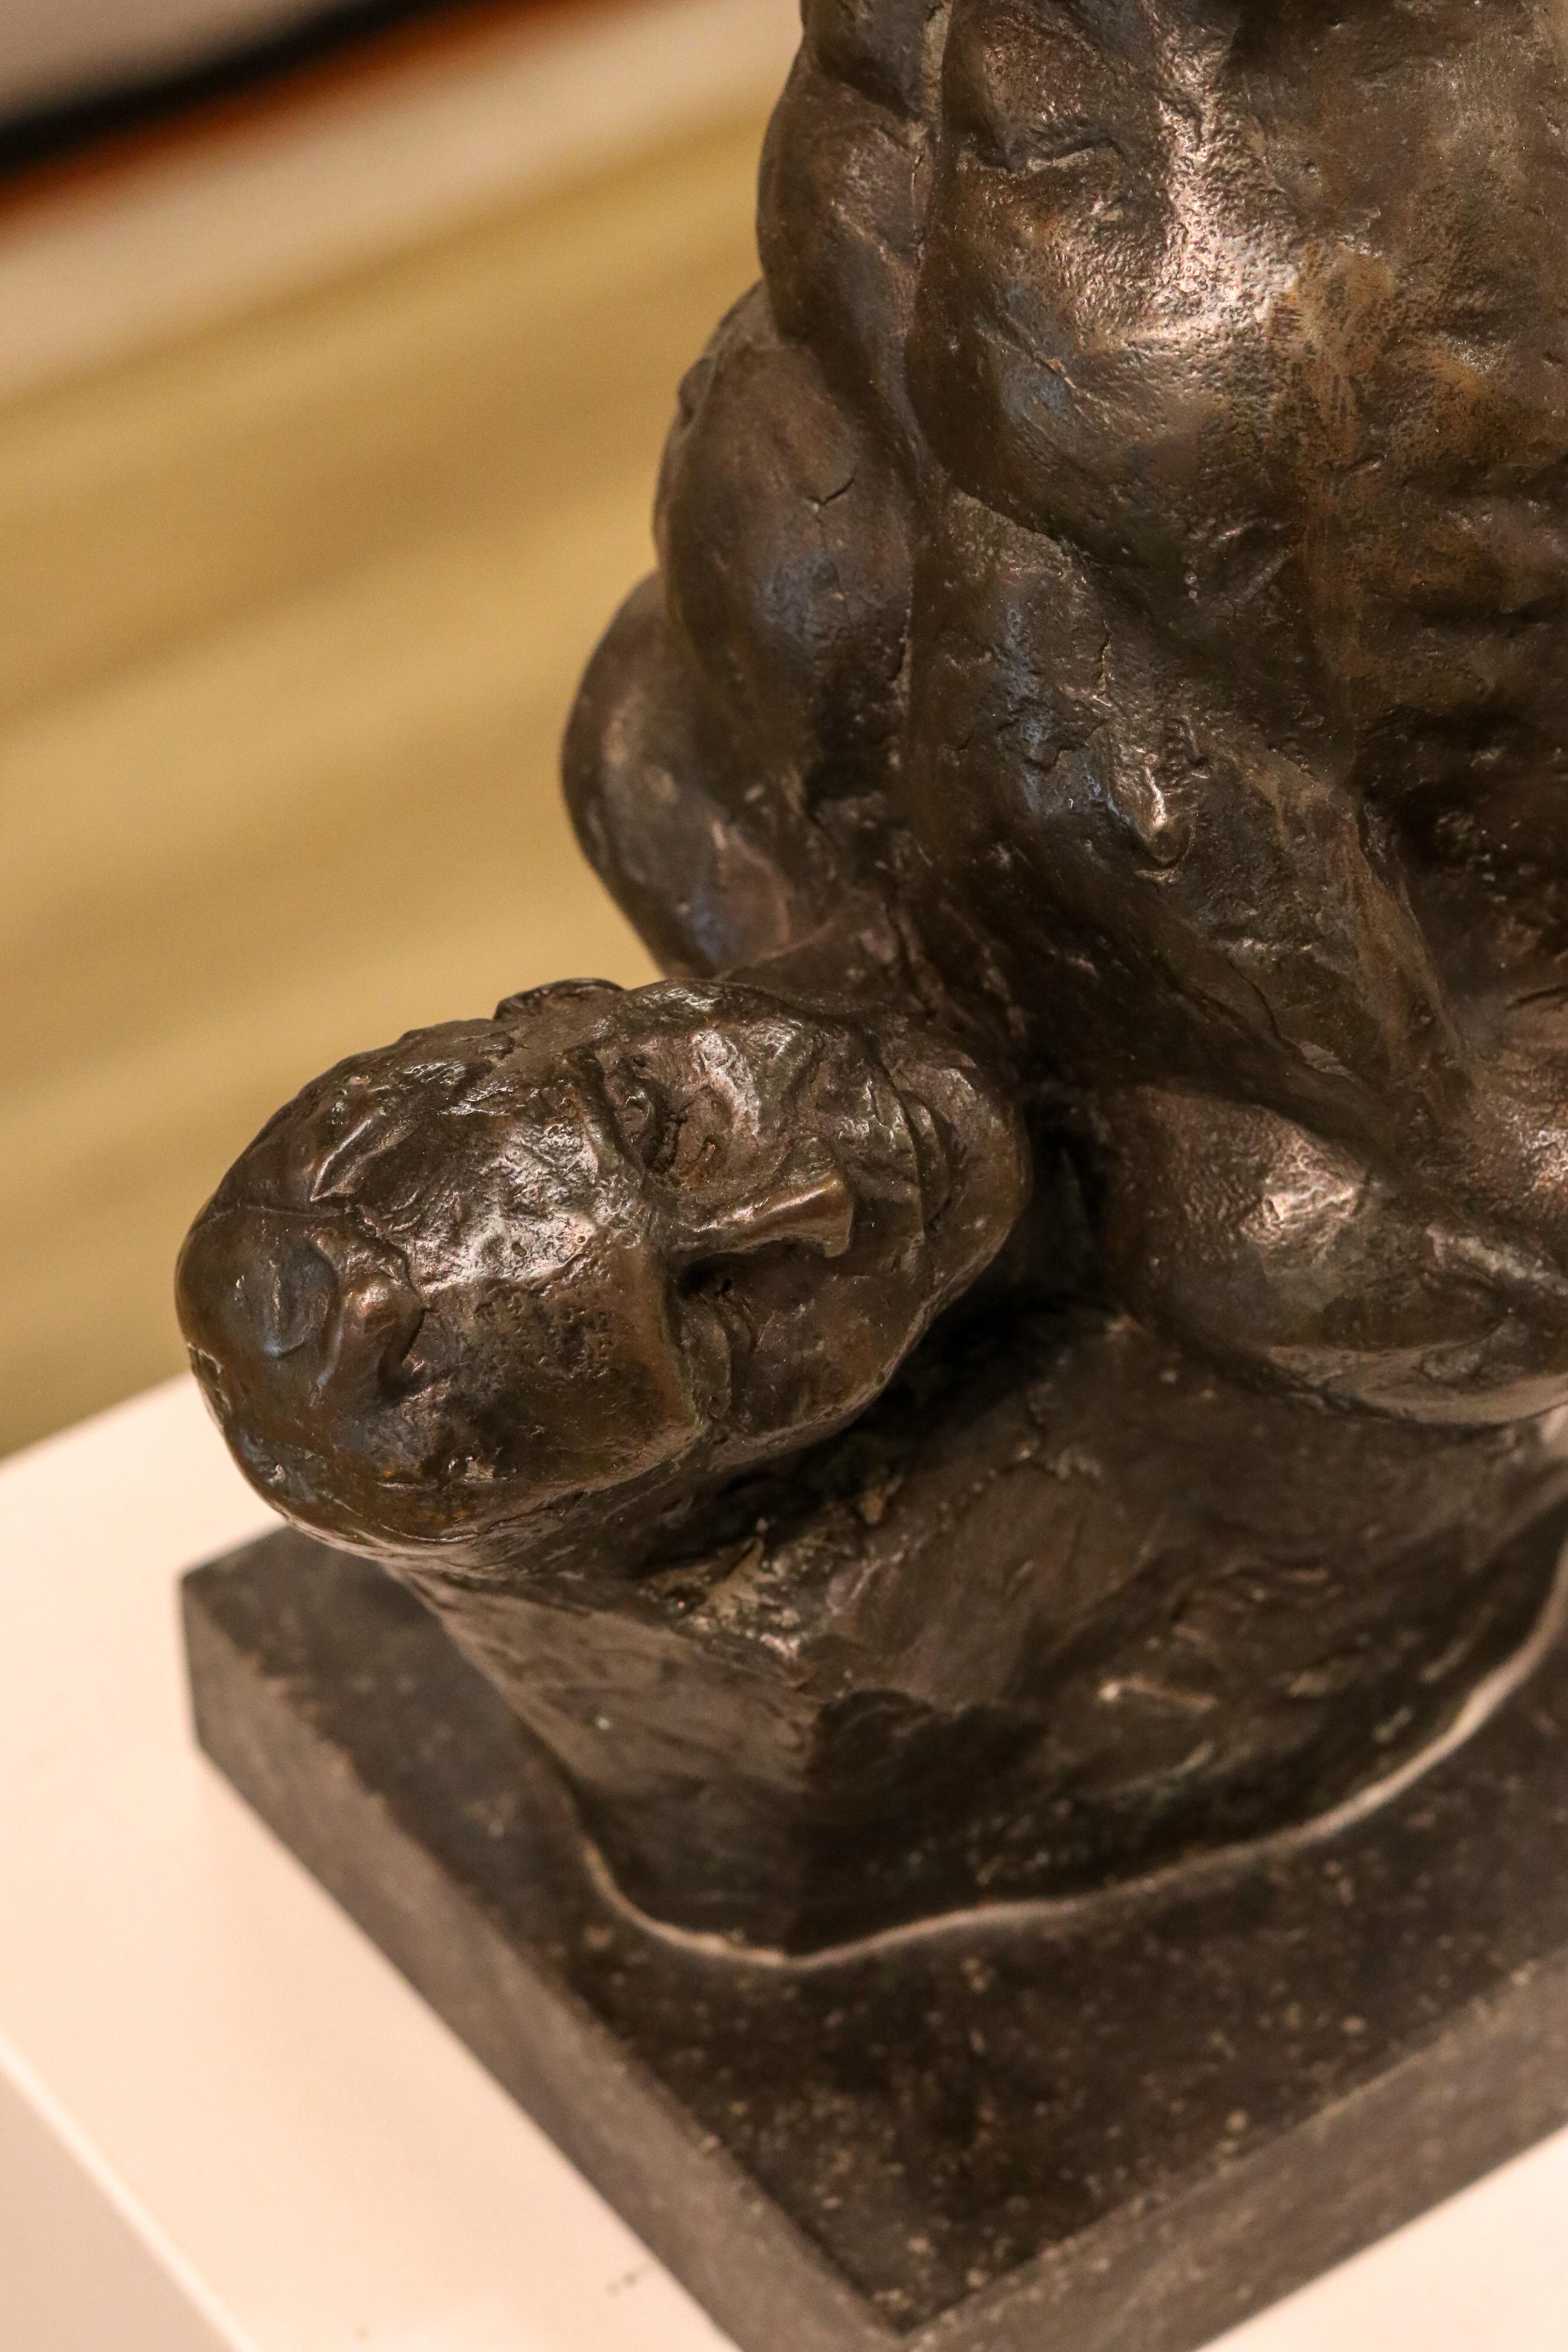 Man kann Romee Kanis mit Fug und Recht als eine alte Bekannte der Galerie bezeichnen, denn ihre Arbeiten waren bis vor einigen Jahren regelmäßig in der Galerie zu sehen. Wir stellen diese Tradition in Ehren wieder her. Wir haben Romee zum ersten Mal